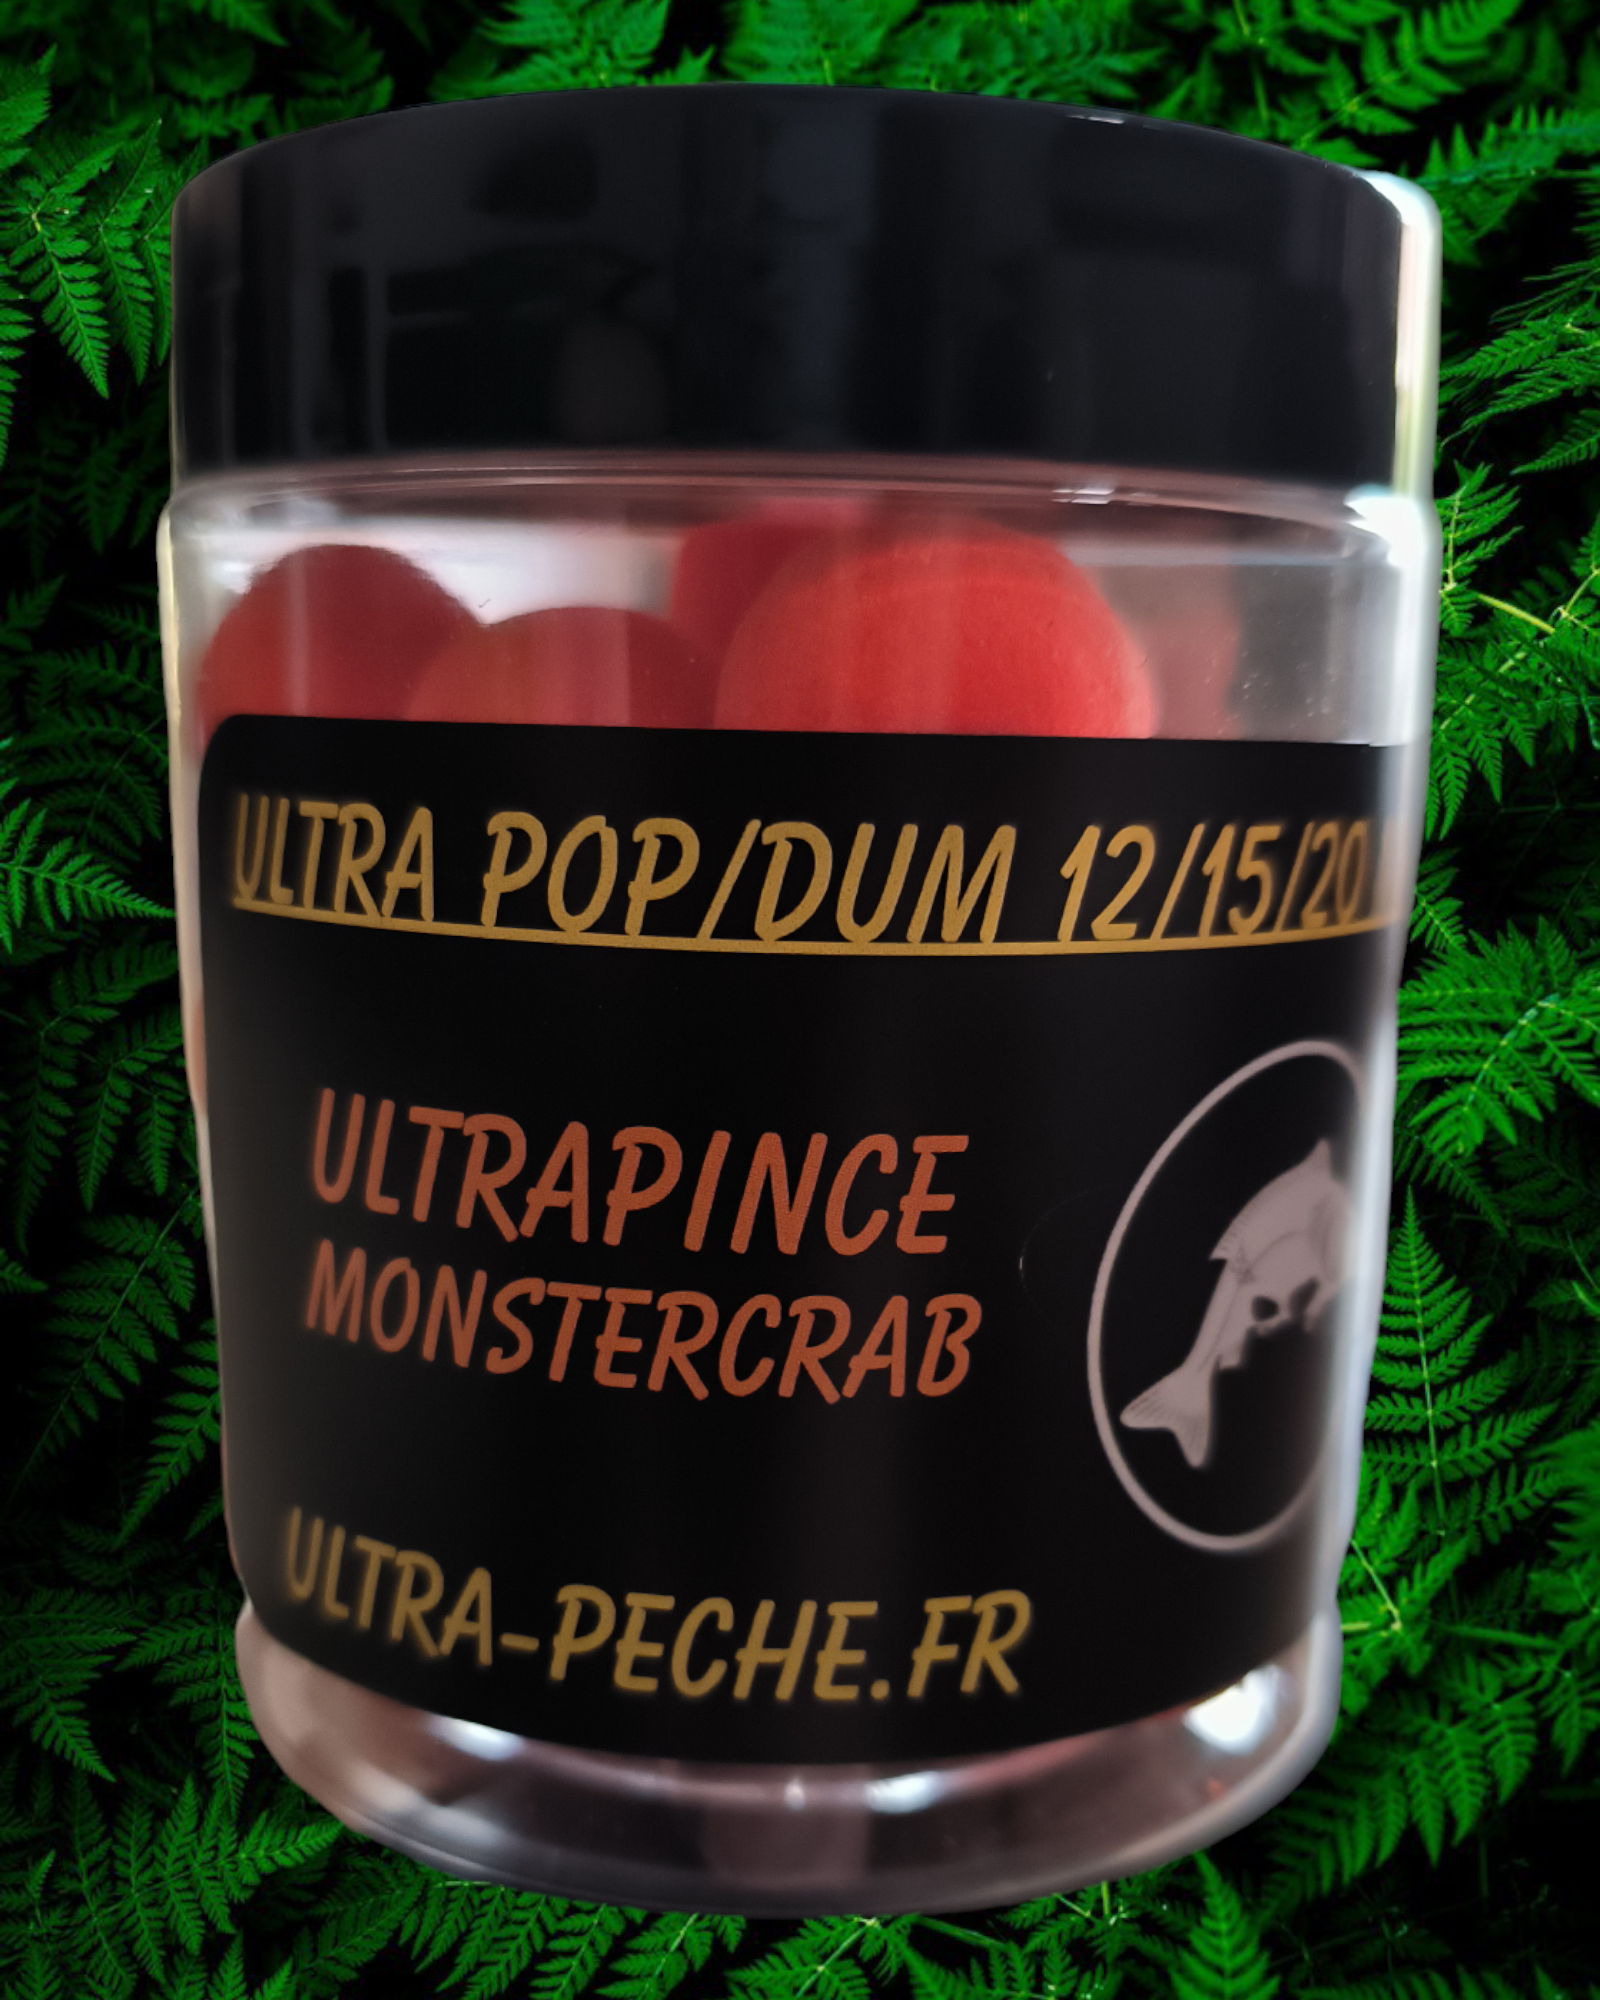 POP UP 15mm ULTRAPINCE MonsterCrab 80g Ultra-peche